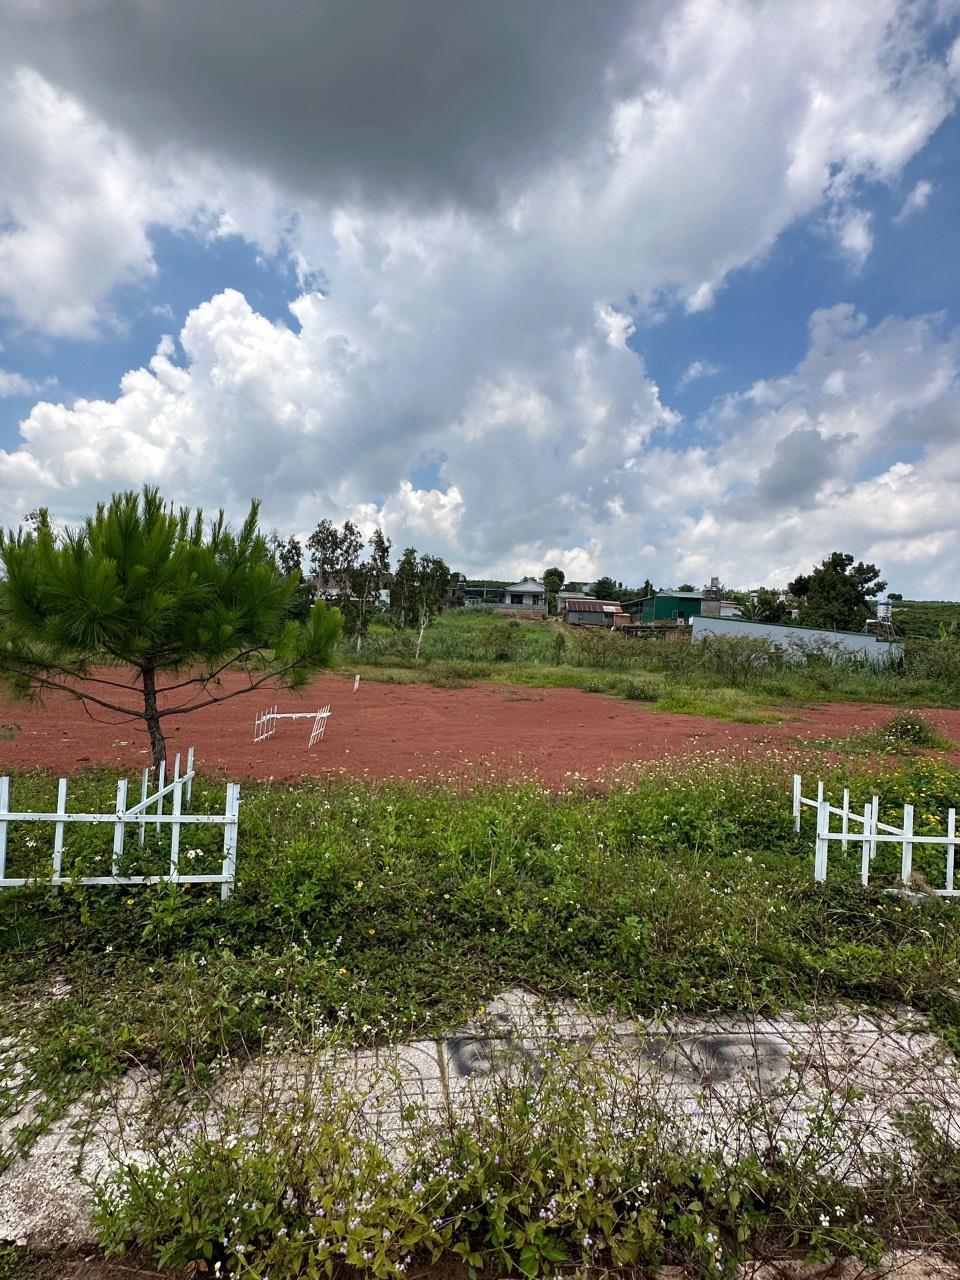 ĐẤT ĐẸP - GIÁ TỐT - Chính Chủ Cần Bán gấp Lô Đất đẹp tại xã Lộc Quảng, huyện Bảo Lâm, tỉnh Lâm Đồng - Ảnh 4